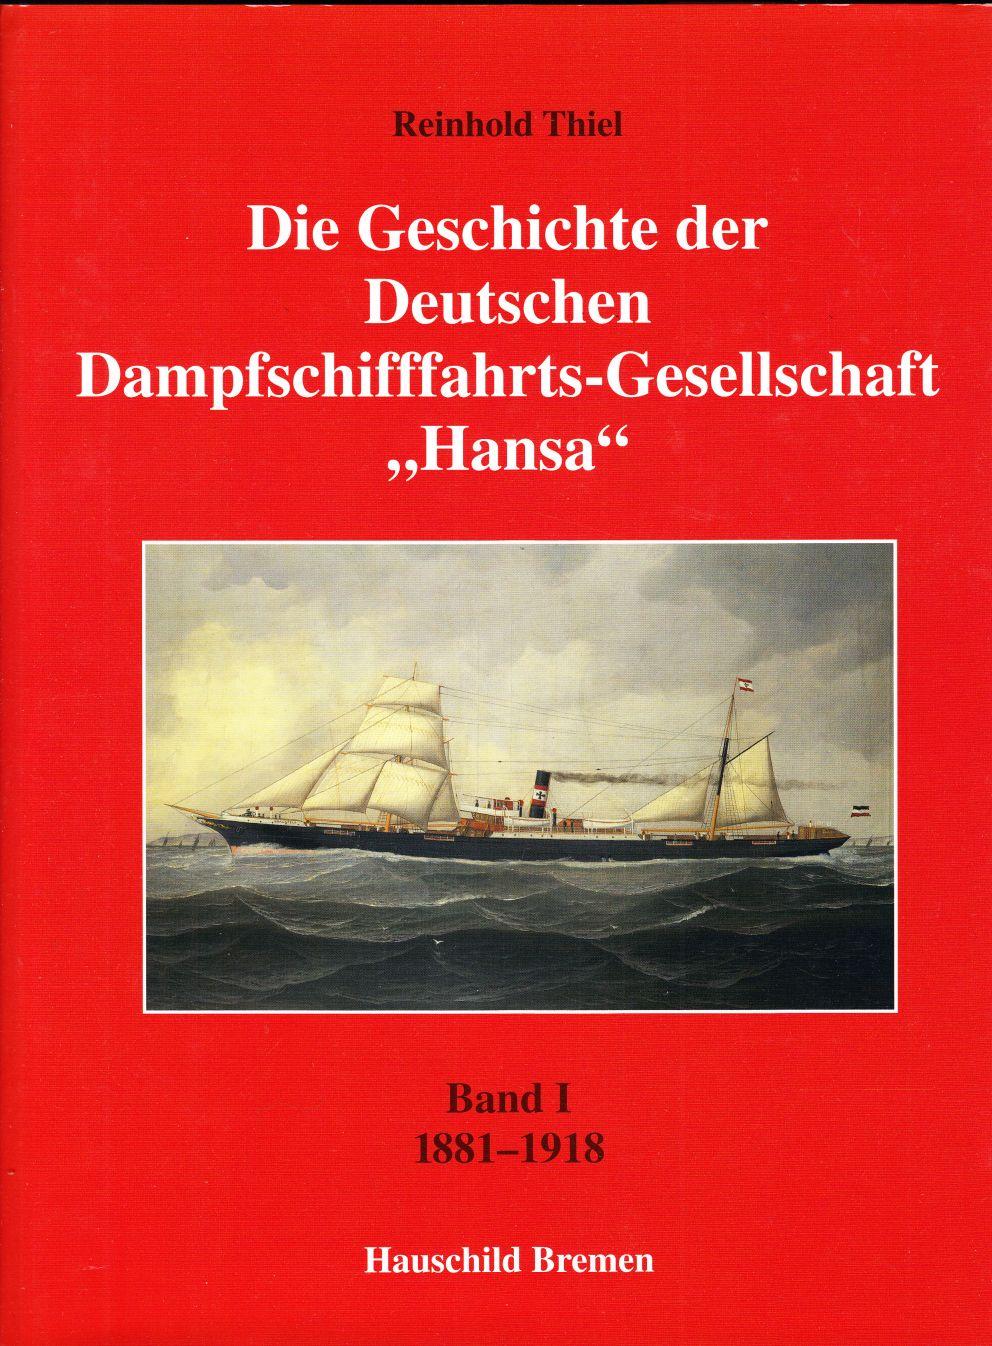 Die Geschichte der Deutschen Dampfschifffahrt-Gesellschaft "Hansa": Band 1: 1881-1918